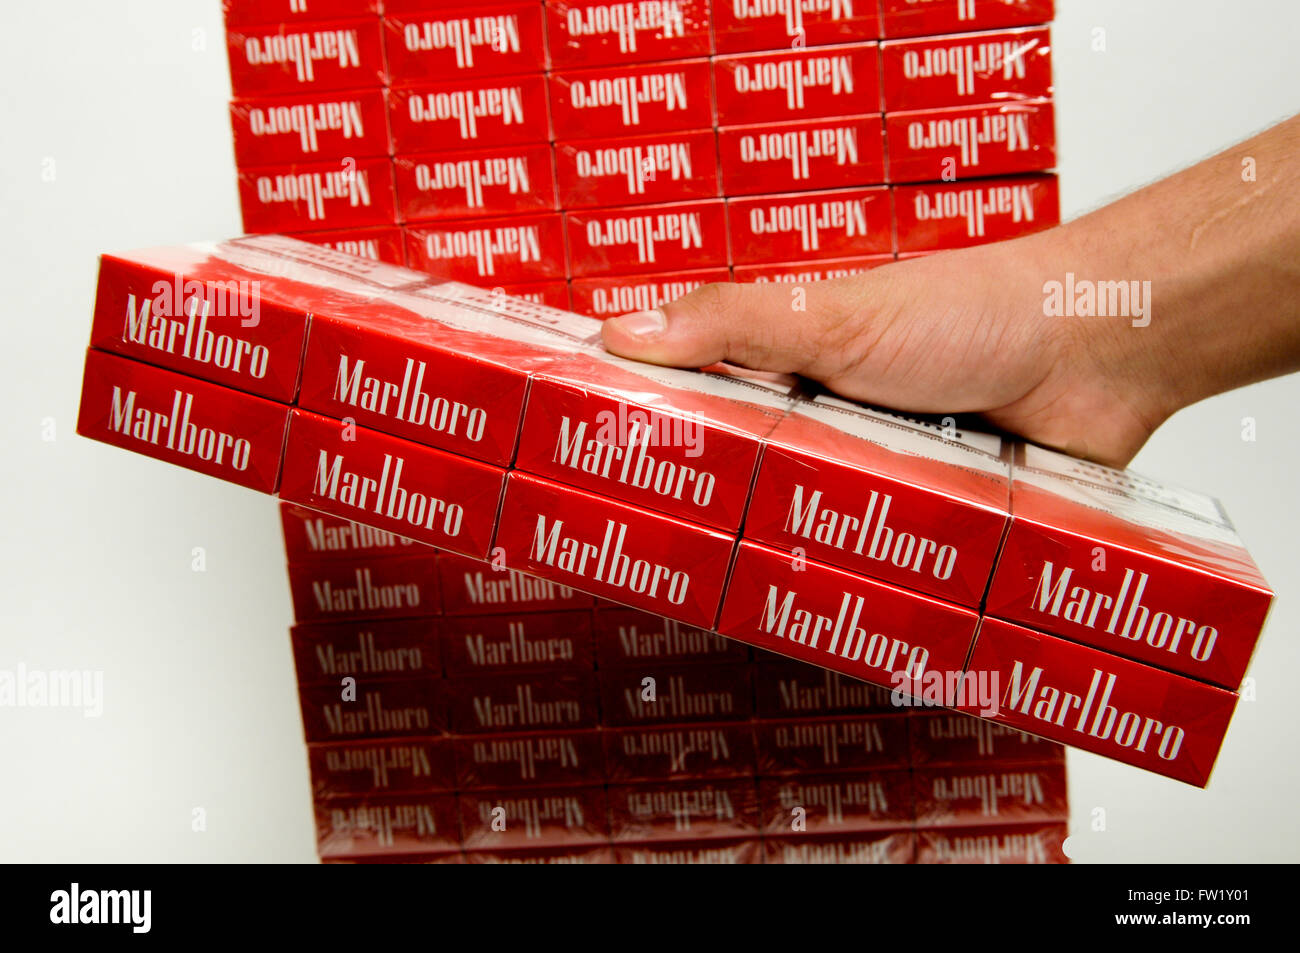 Marlboro cigarettes immagini e fotografie stock ad alta risoluzione -  Pagina 2 - Alamy